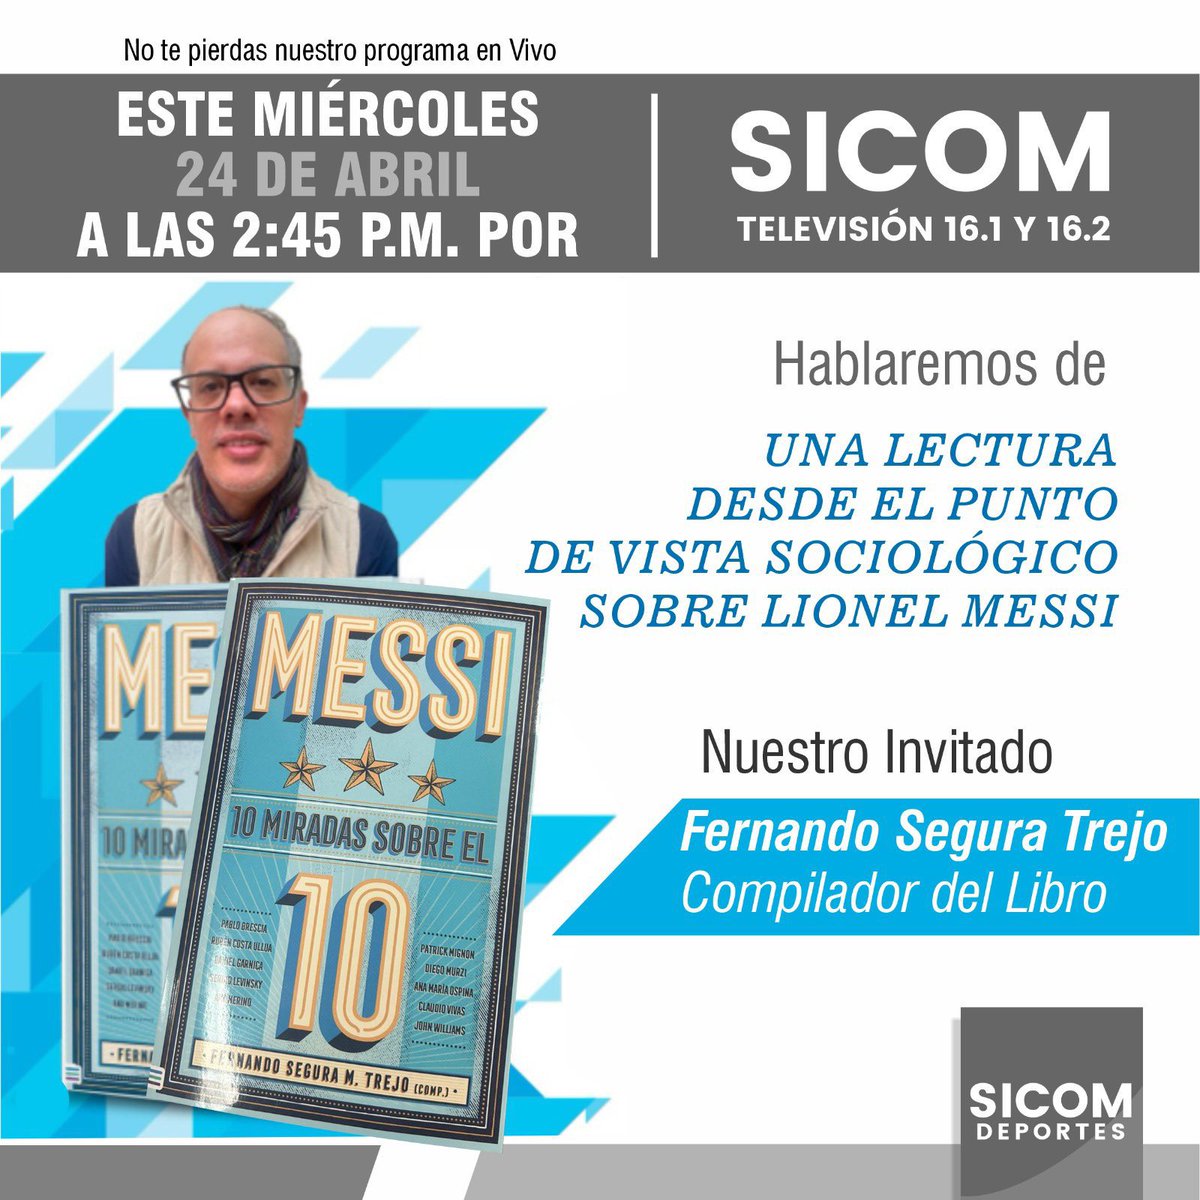 Hoy en #SICOMDeportes, no te pierdas la entrevista con Fernando Segura Trejo, compilador del libro: 'Messi, 10 miradas sobre el 10' @Tendencias_Ed @UranoMx @SICOMDeportes 📆24 de abril ⏰2:45 pm